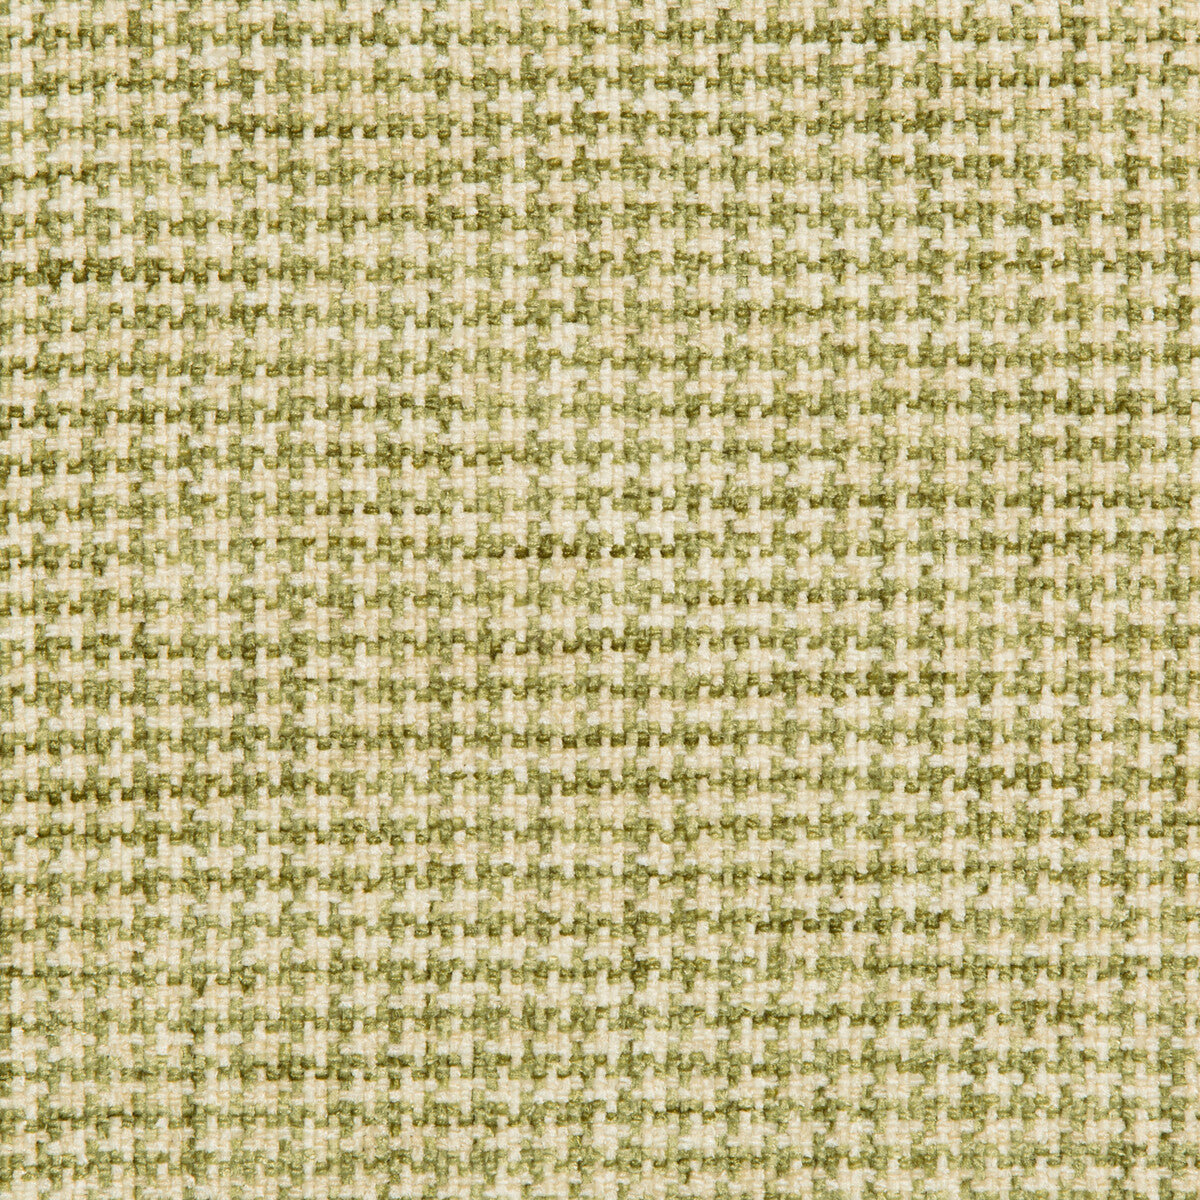 Kravet Basics fabric in 35778-3 color - pattern 35778.3.0 - by Kravet Basics